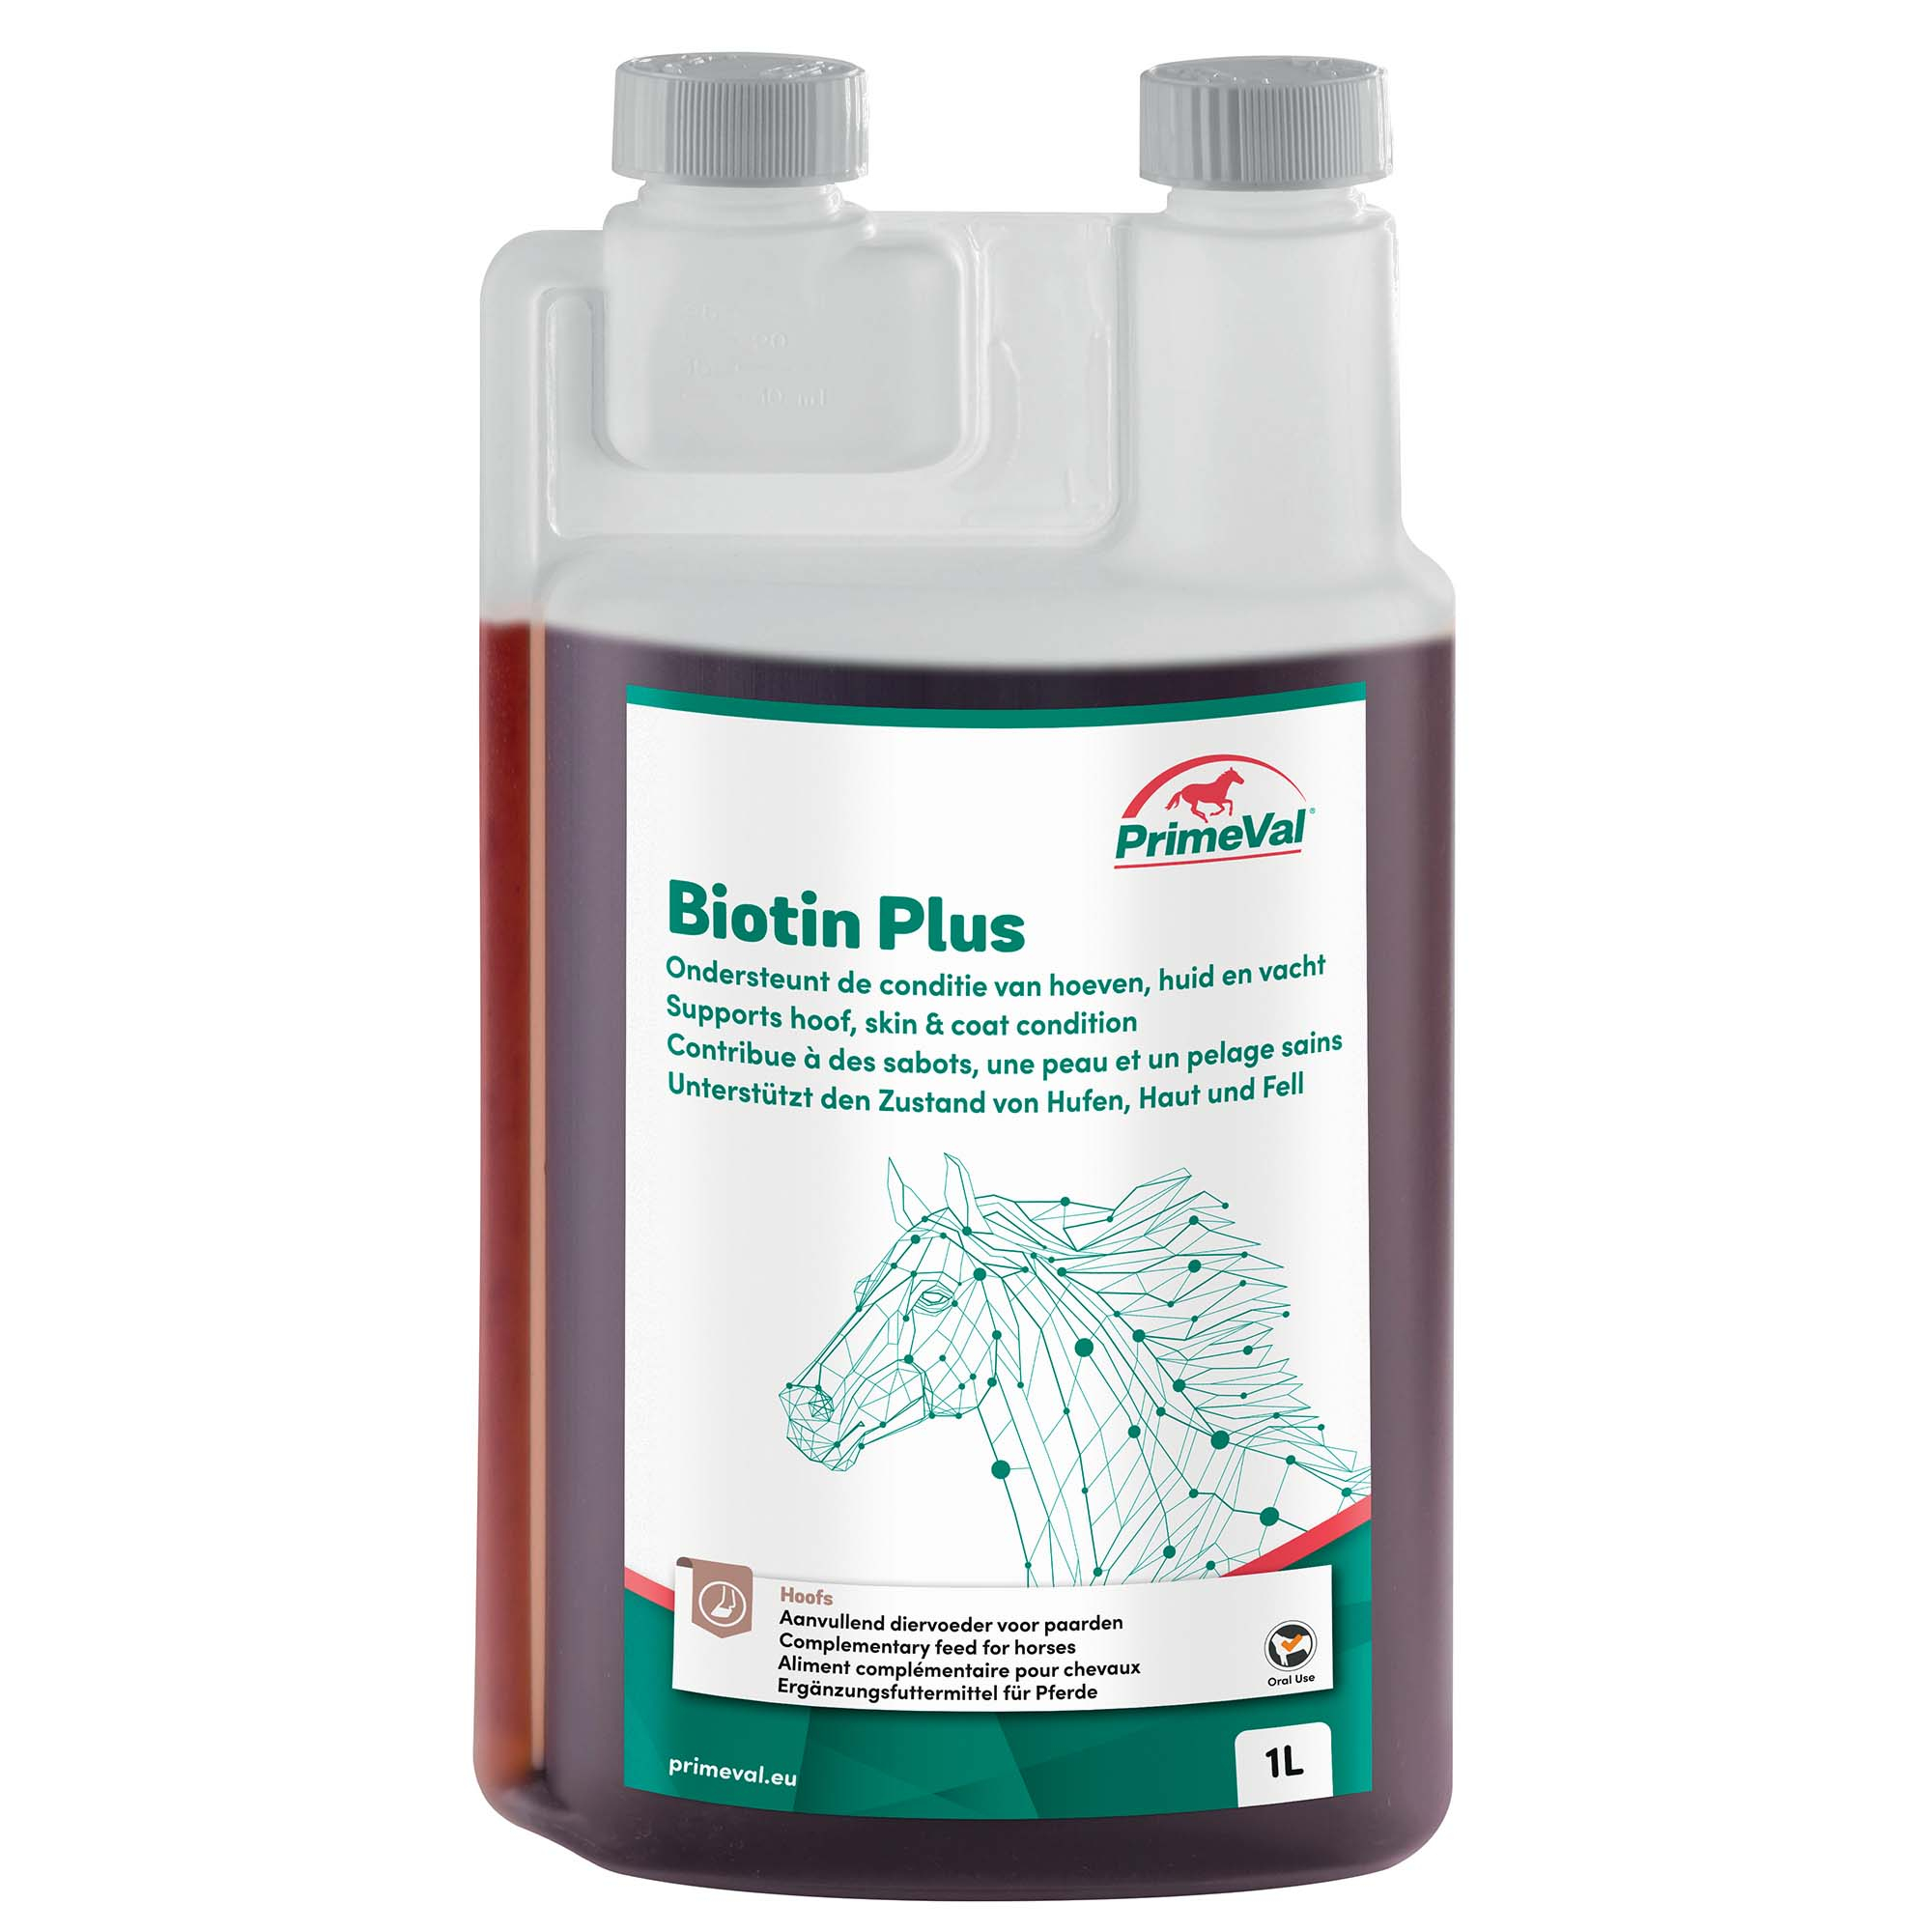 PrimeVal Biotin Plus suplemento líquido para los cascos, la piel y el pelo de los caballos